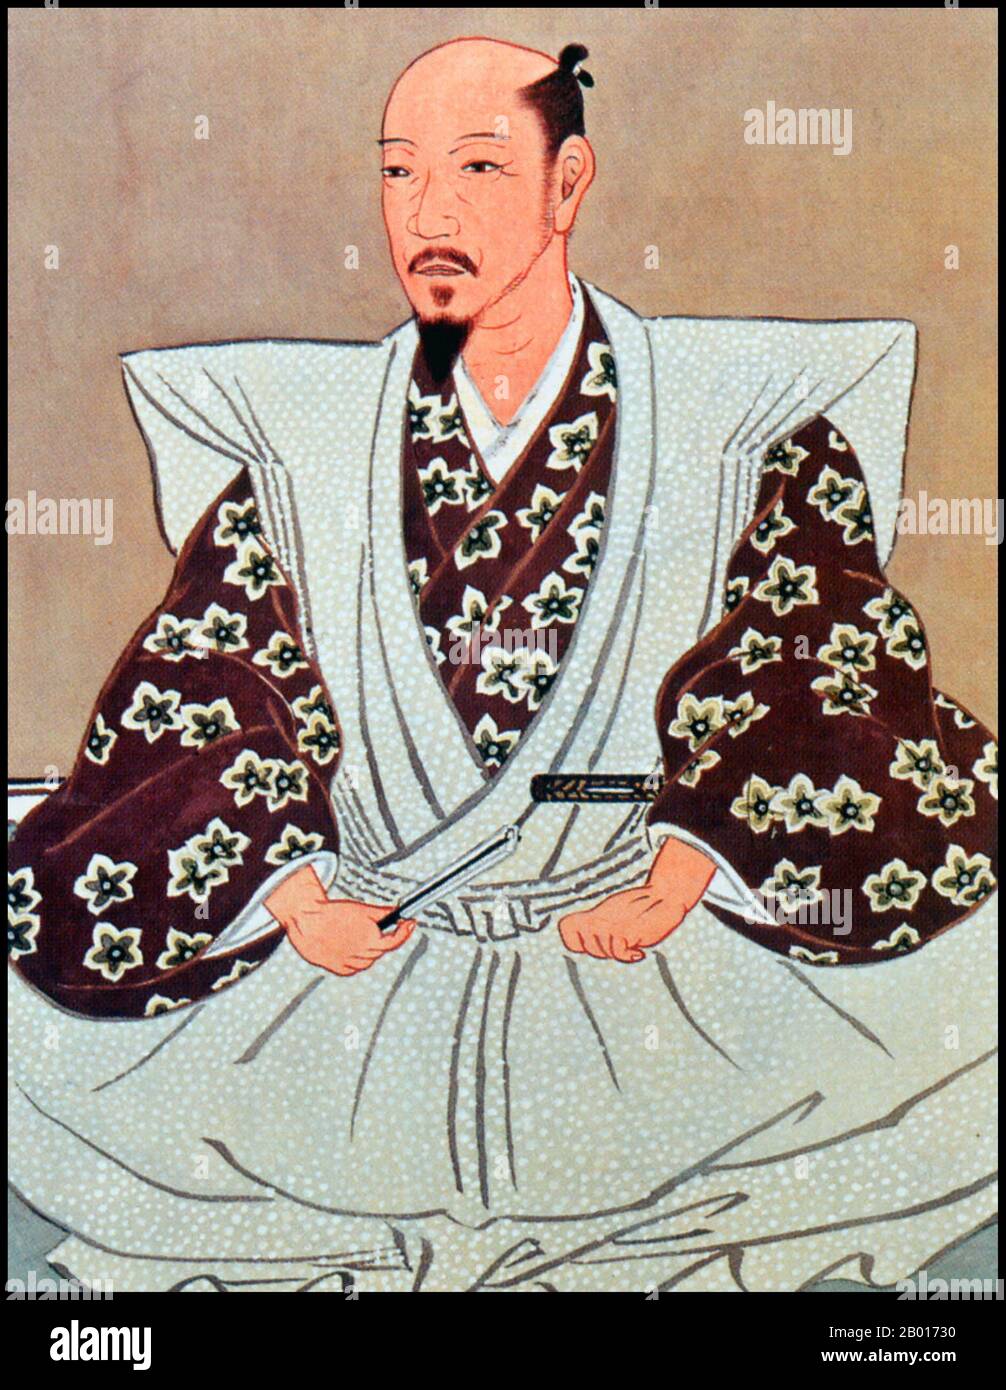 Japan: Kato Kiyomasa (25. Juli 1562 - 2. August 1611), Daimyo von Kumamoto und Erbauer der Burg Kumamoto. Hängende Schriftrolle Malerei, Anfang 17th Jahrhundert. Kato Kiyomasa war ein Daimyo der Sengoku- und Edo-Periode. Als einer von Toyotomi Hideyoshis „Sieben Speere des Shizugatake“ diente er als einer der drei hochrangigen Kommandanten während des Siebenjährigen Krieges (1592-1598) gegen die koreanische Dynastie Joseon. Neben Konishi Yukinaga eroberte er Seoul, Busan und viele andere wichtige Städte. Er besiegte die letzten koreanischen Stammgäste in der Schlacht am Fluss Imjin und beruhigte Hamgyong. Stockfoto